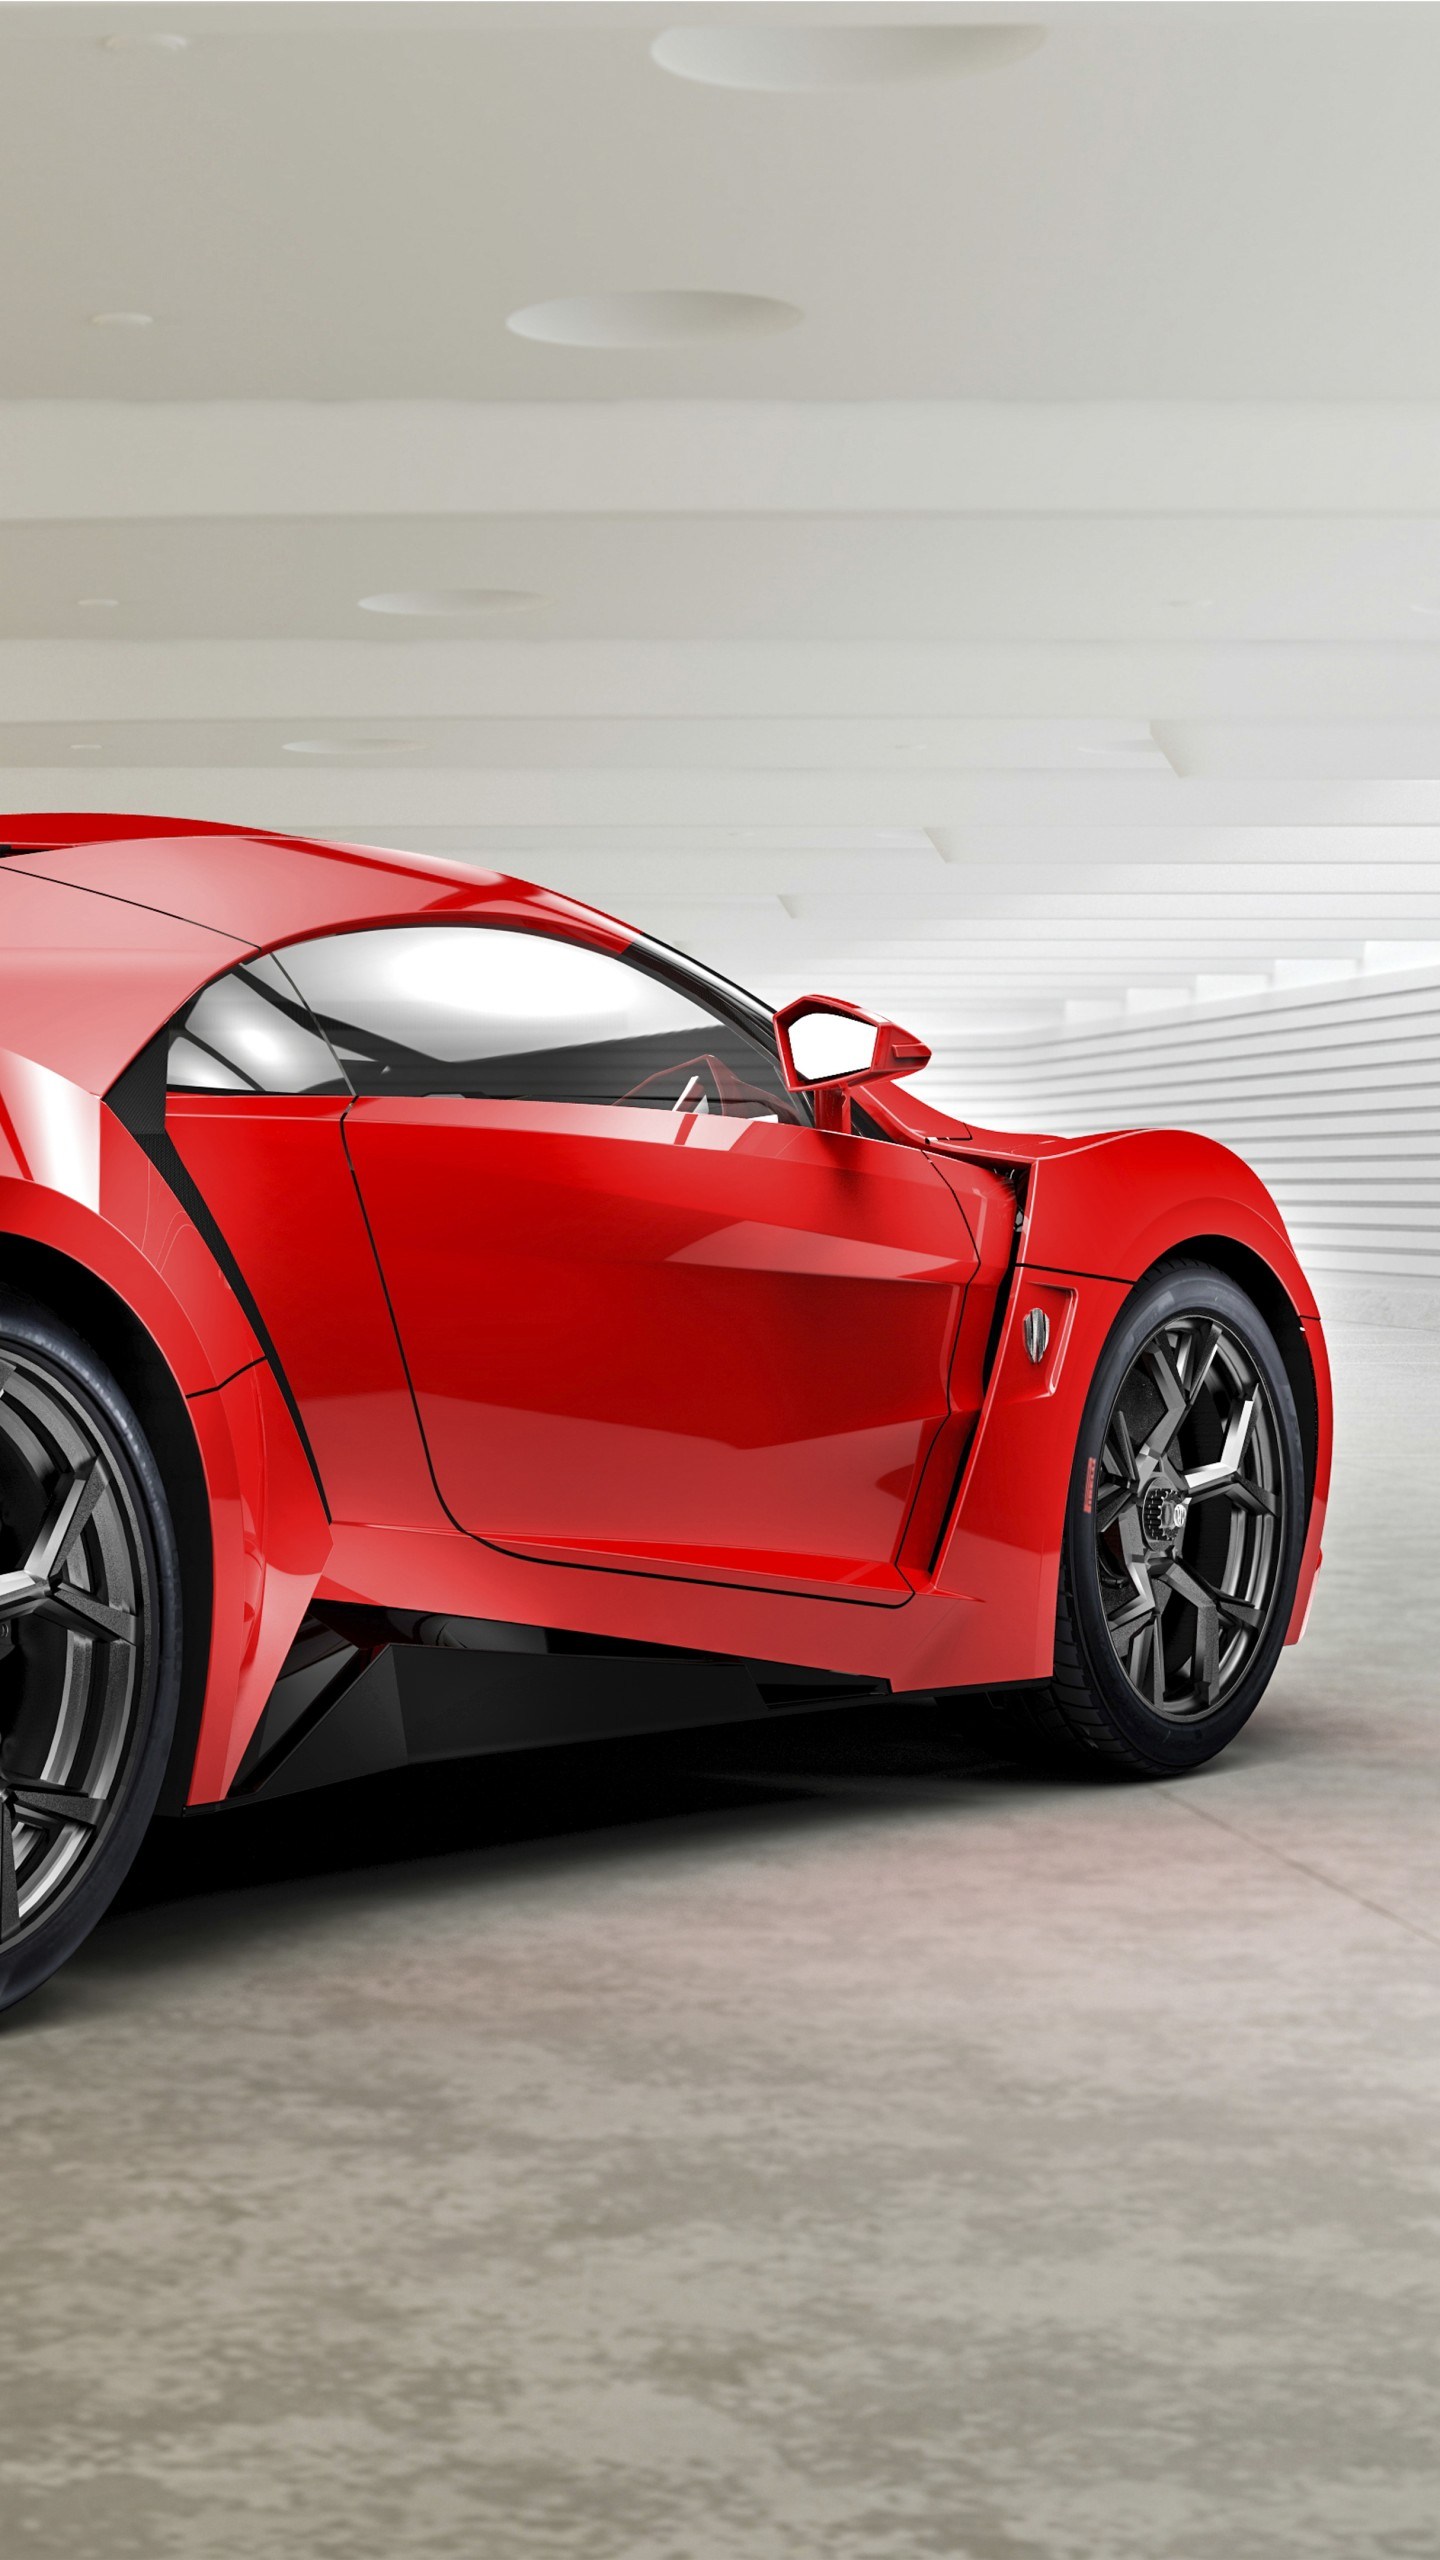 Buy Lykan Hypersport, Supercar, Sports Car, Luxury - W Motors Lykan Hypersport , HD Wallpaper & Backgrounds